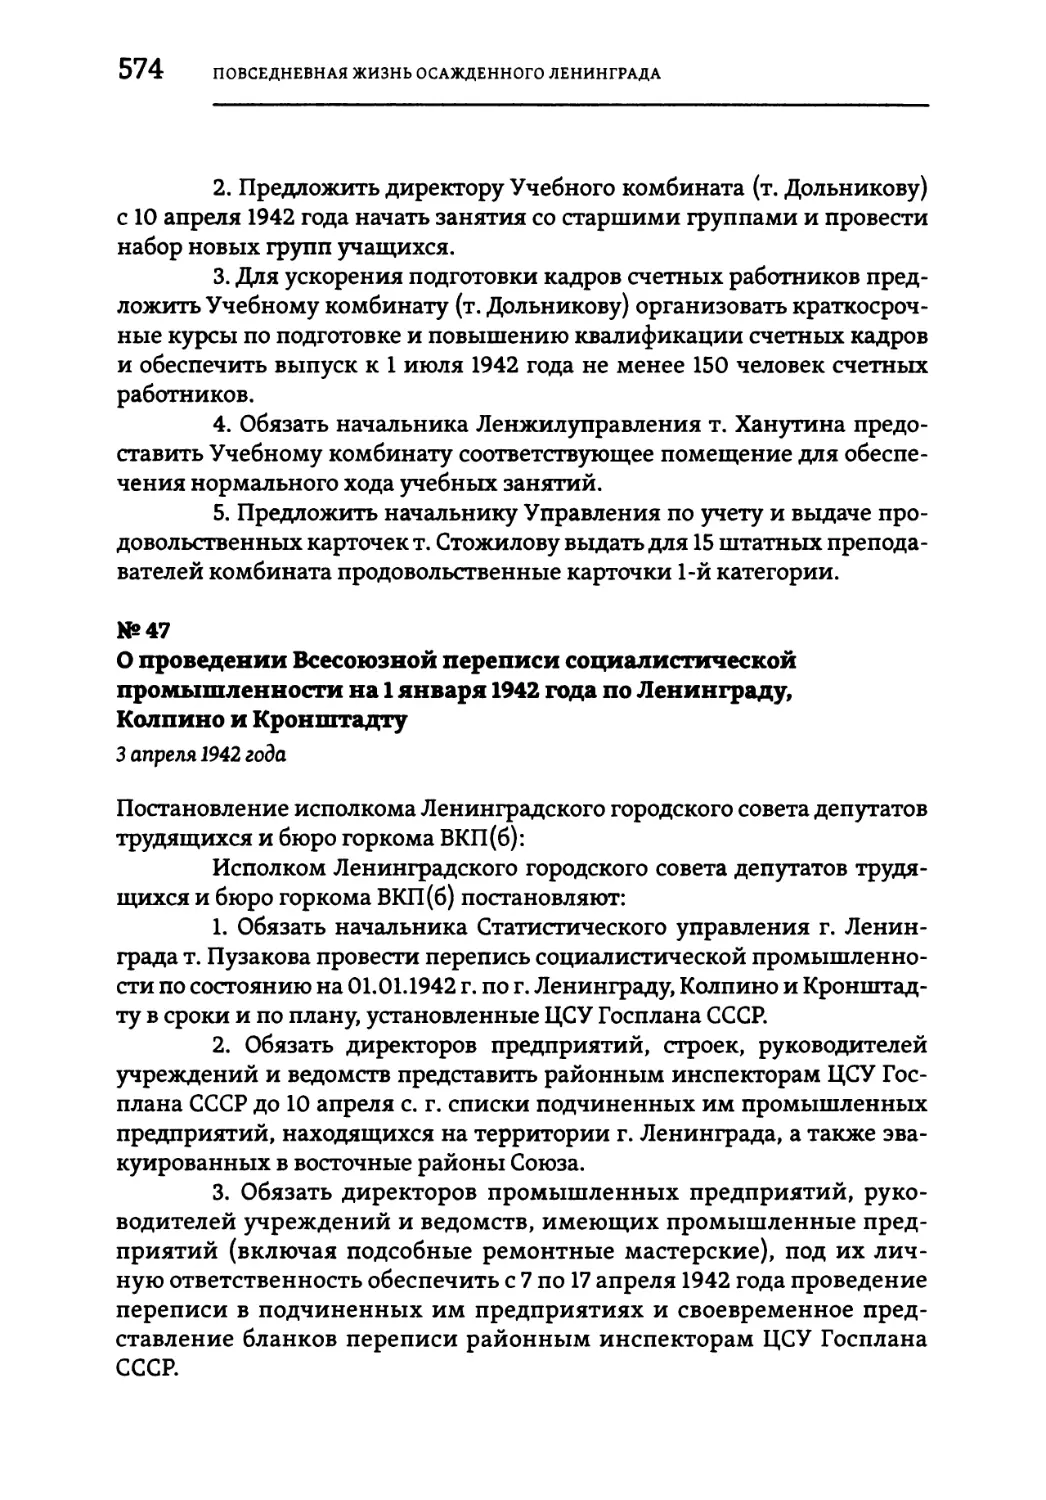 №47 О проведении Всесоюзной переписи социалистической промышленности на 1 января 1942 года по Ленинграду, Колпино и Кронштадту